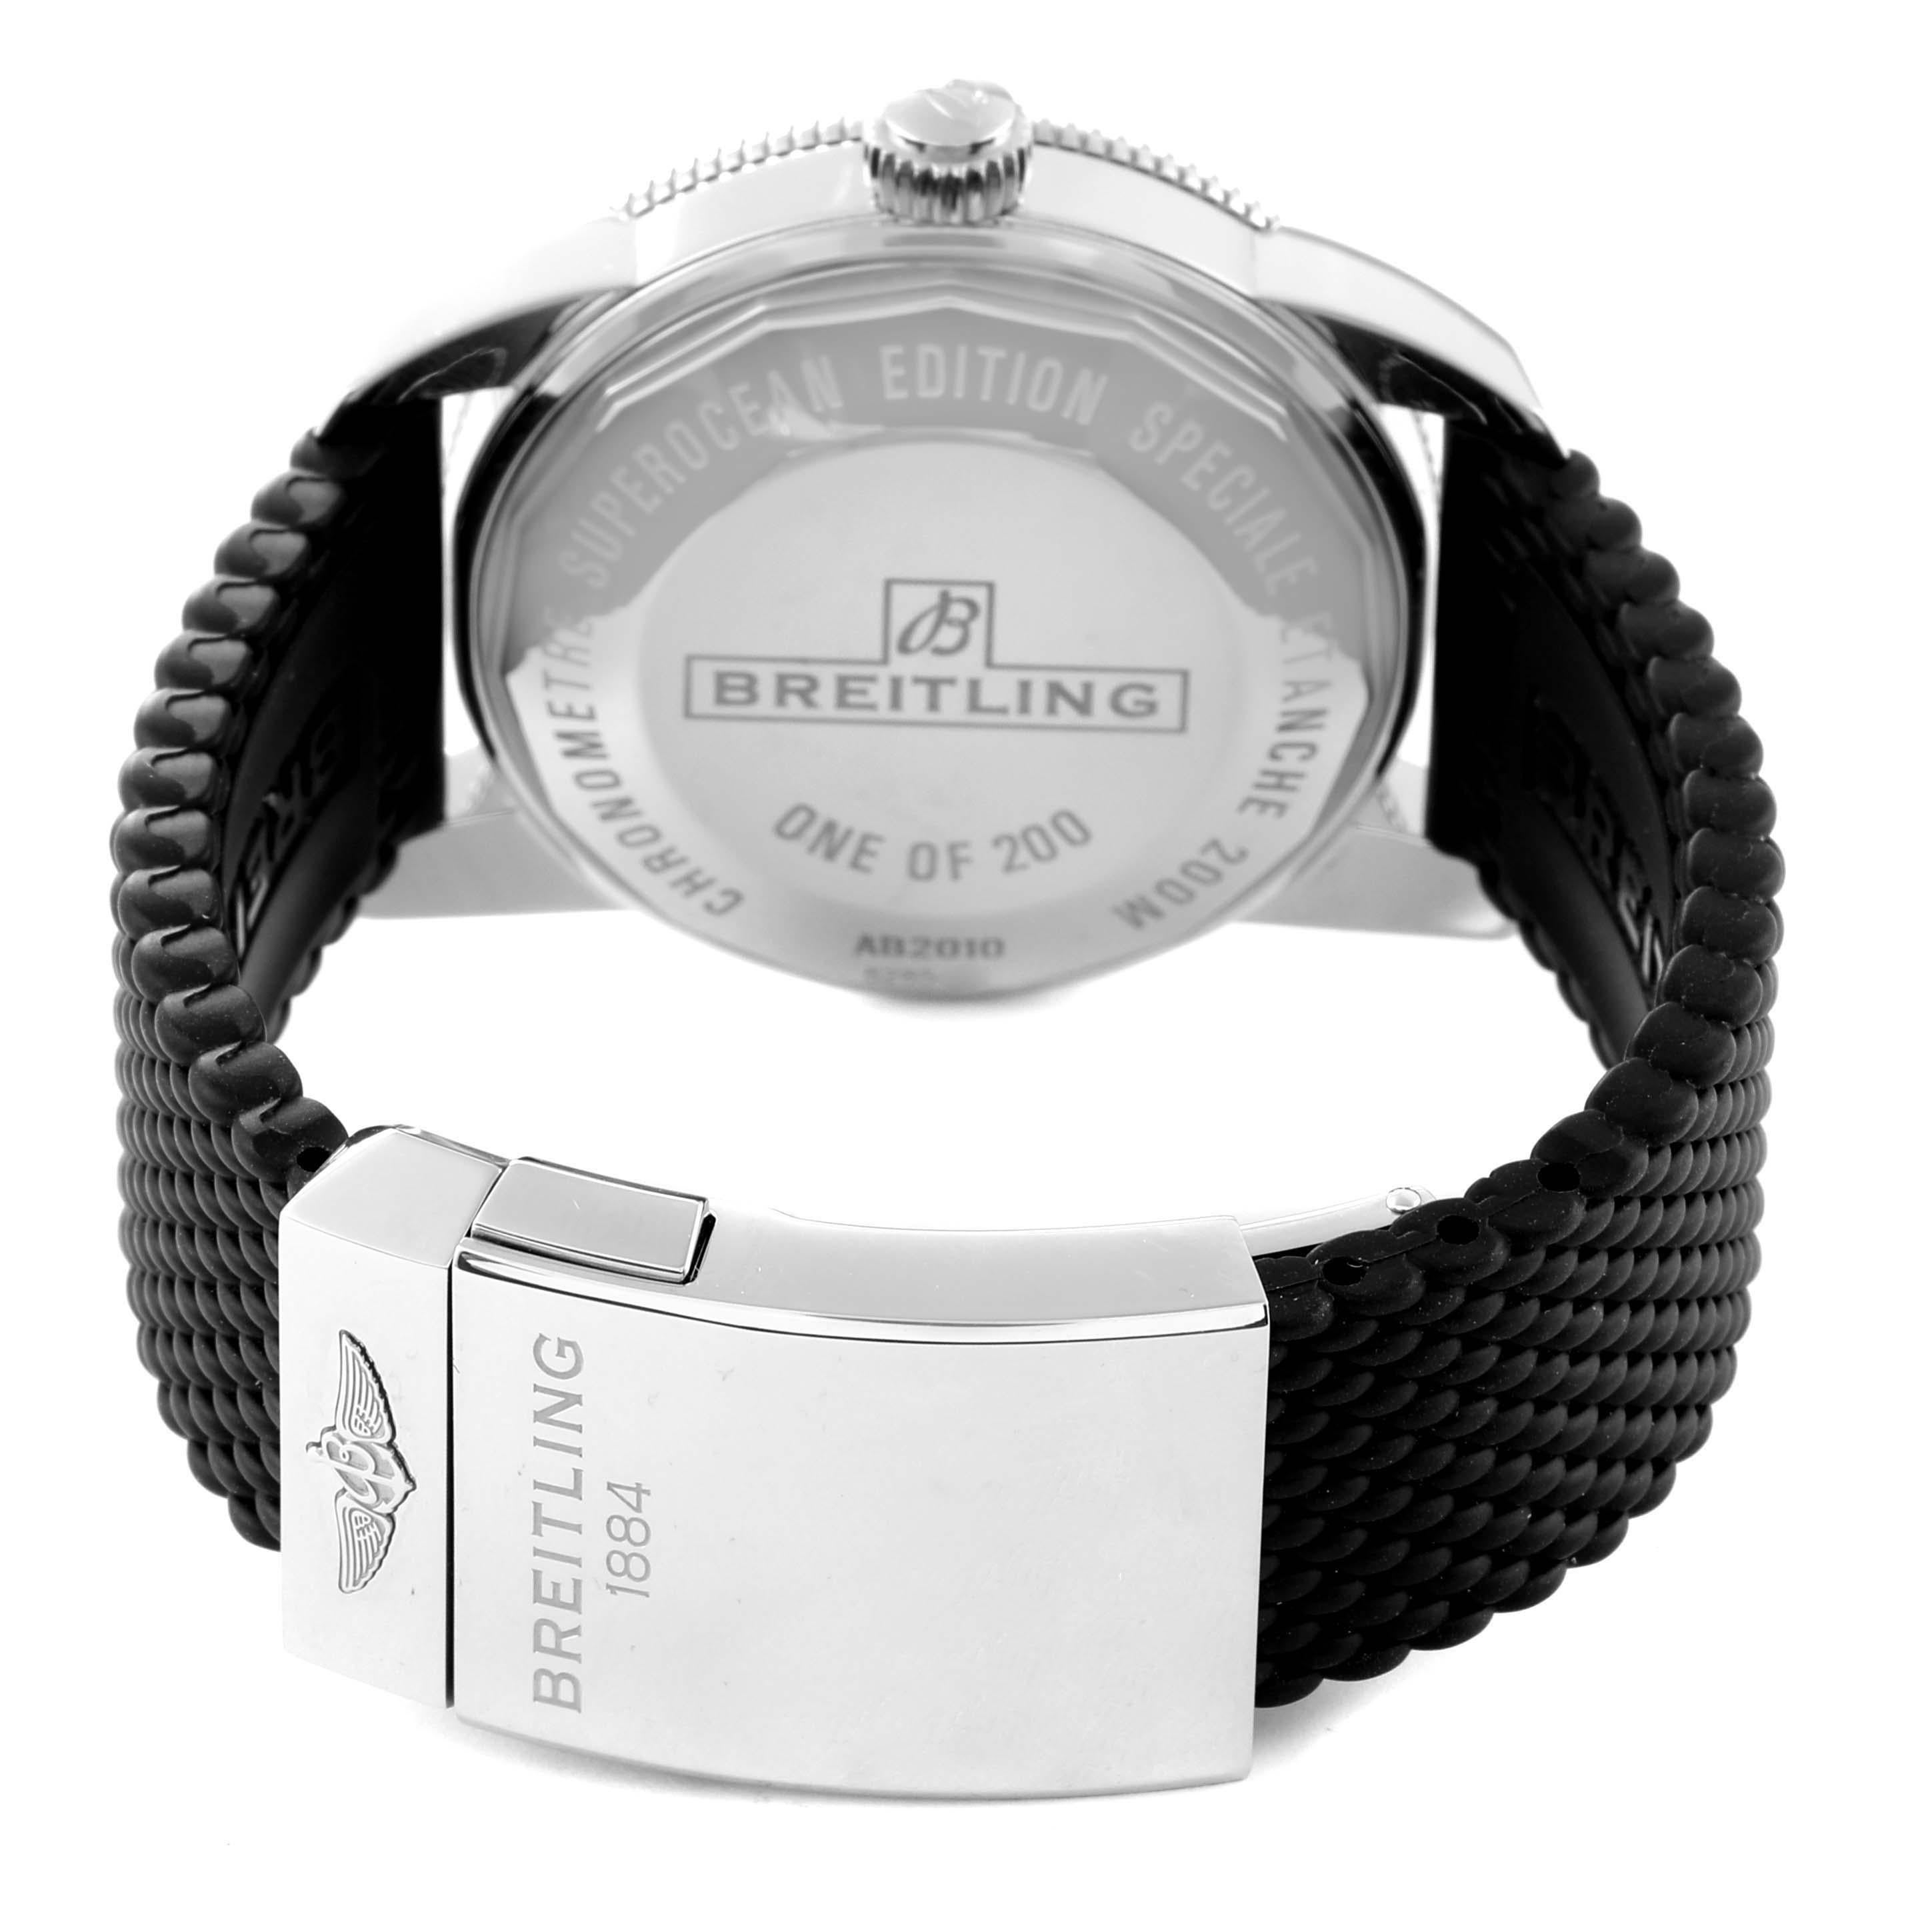 Breitling Superocean Heritage II 42 Ice Blue Dial Steel Watch AB2010 Unworn 2